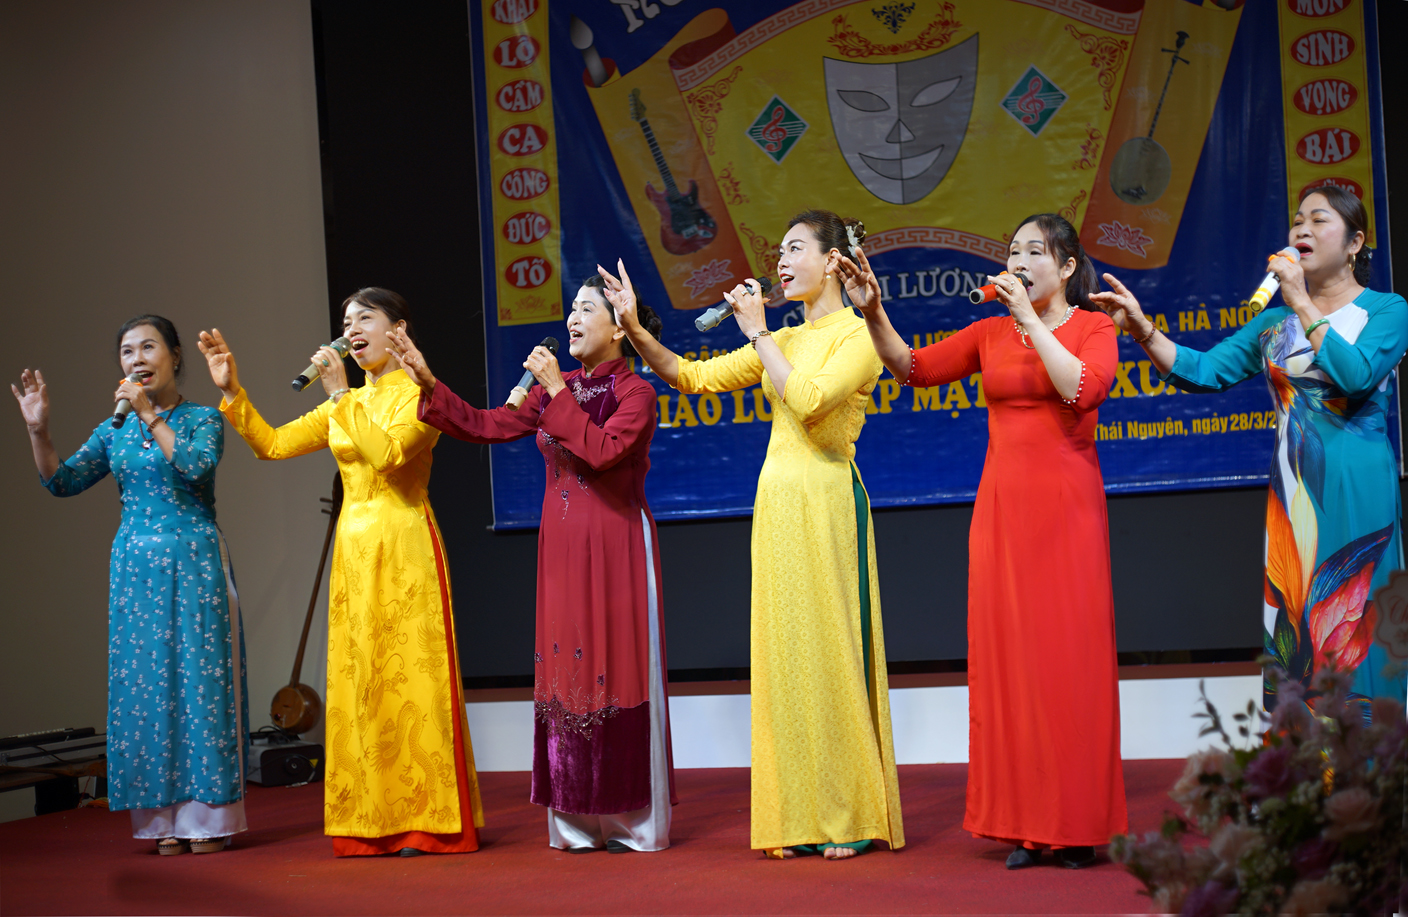 Chi Hội Sân khấu và Câu lạc bộ Cải lương Thái Nguyên giao lưu gặp mặt đầu xuân